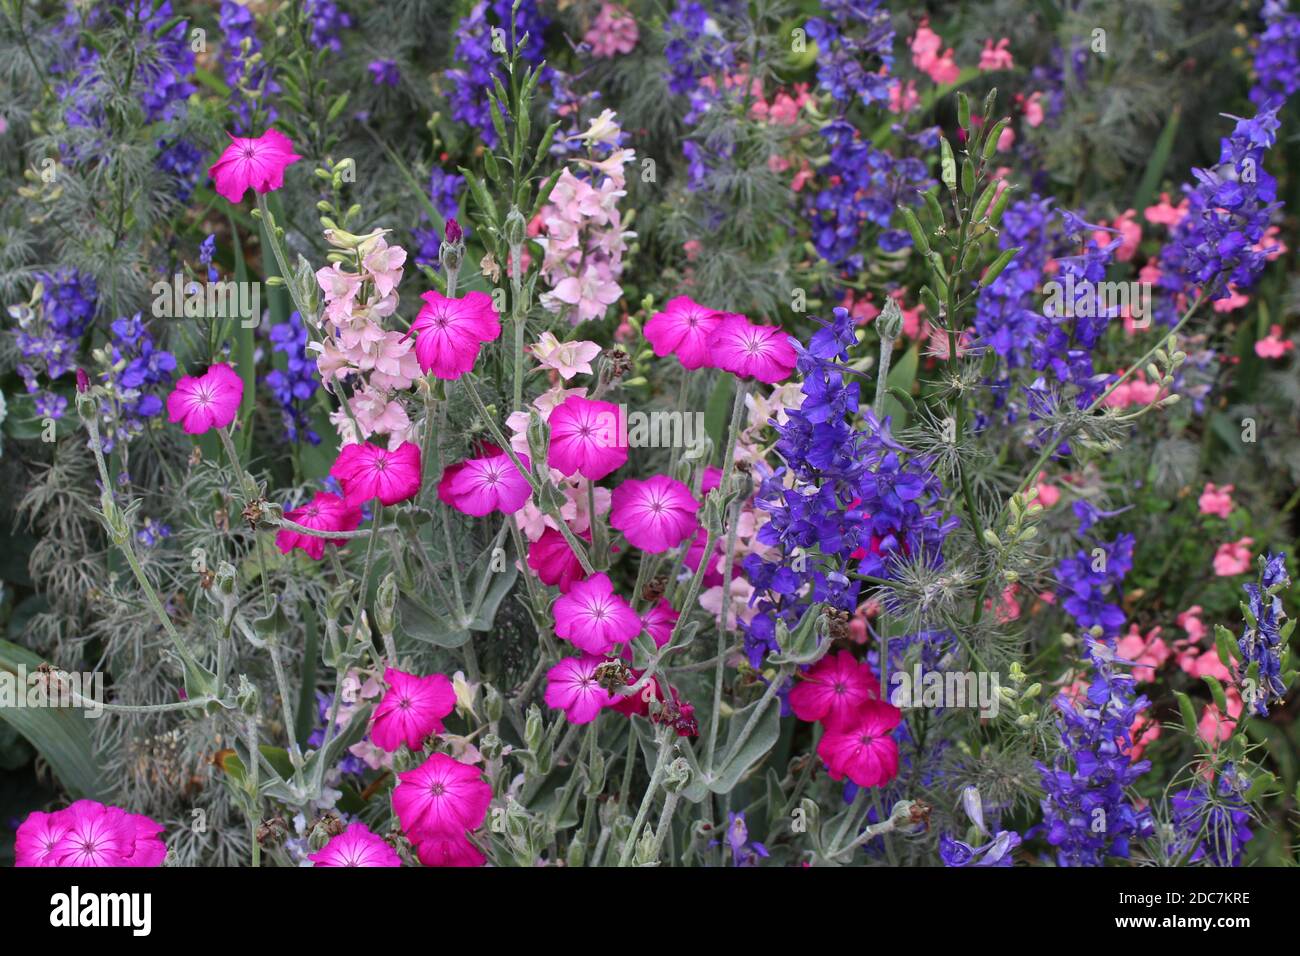 Ein Blumenbarbabietola in den färben rosa, pink und lila mit den Blumen blauer Salbei, Duftsalbei und Pfingstnelken in einem privaten Garten in NRW, Deutschla. Foto Stock